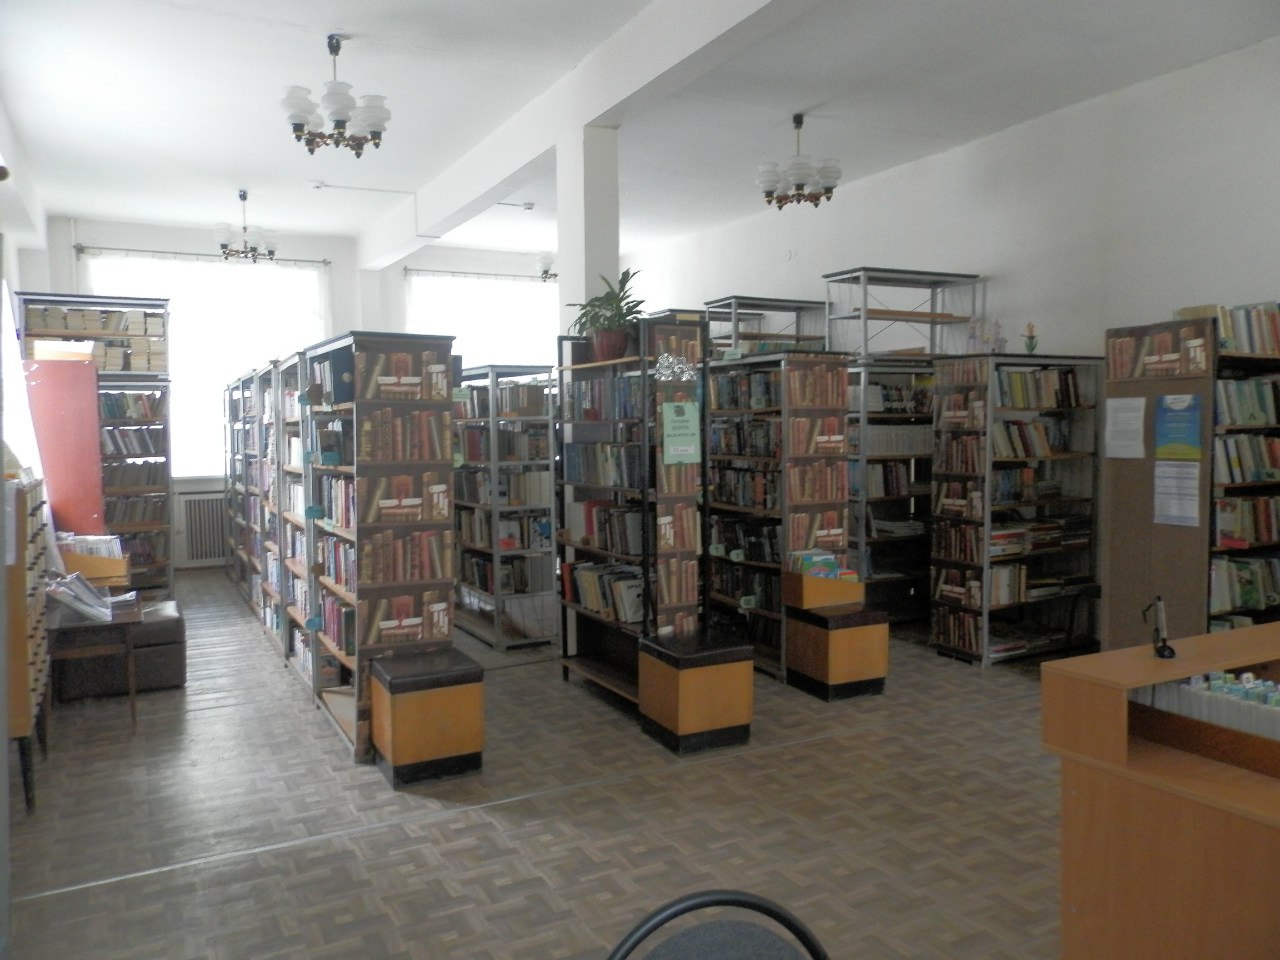 Официальные сайты библиотек ижевск